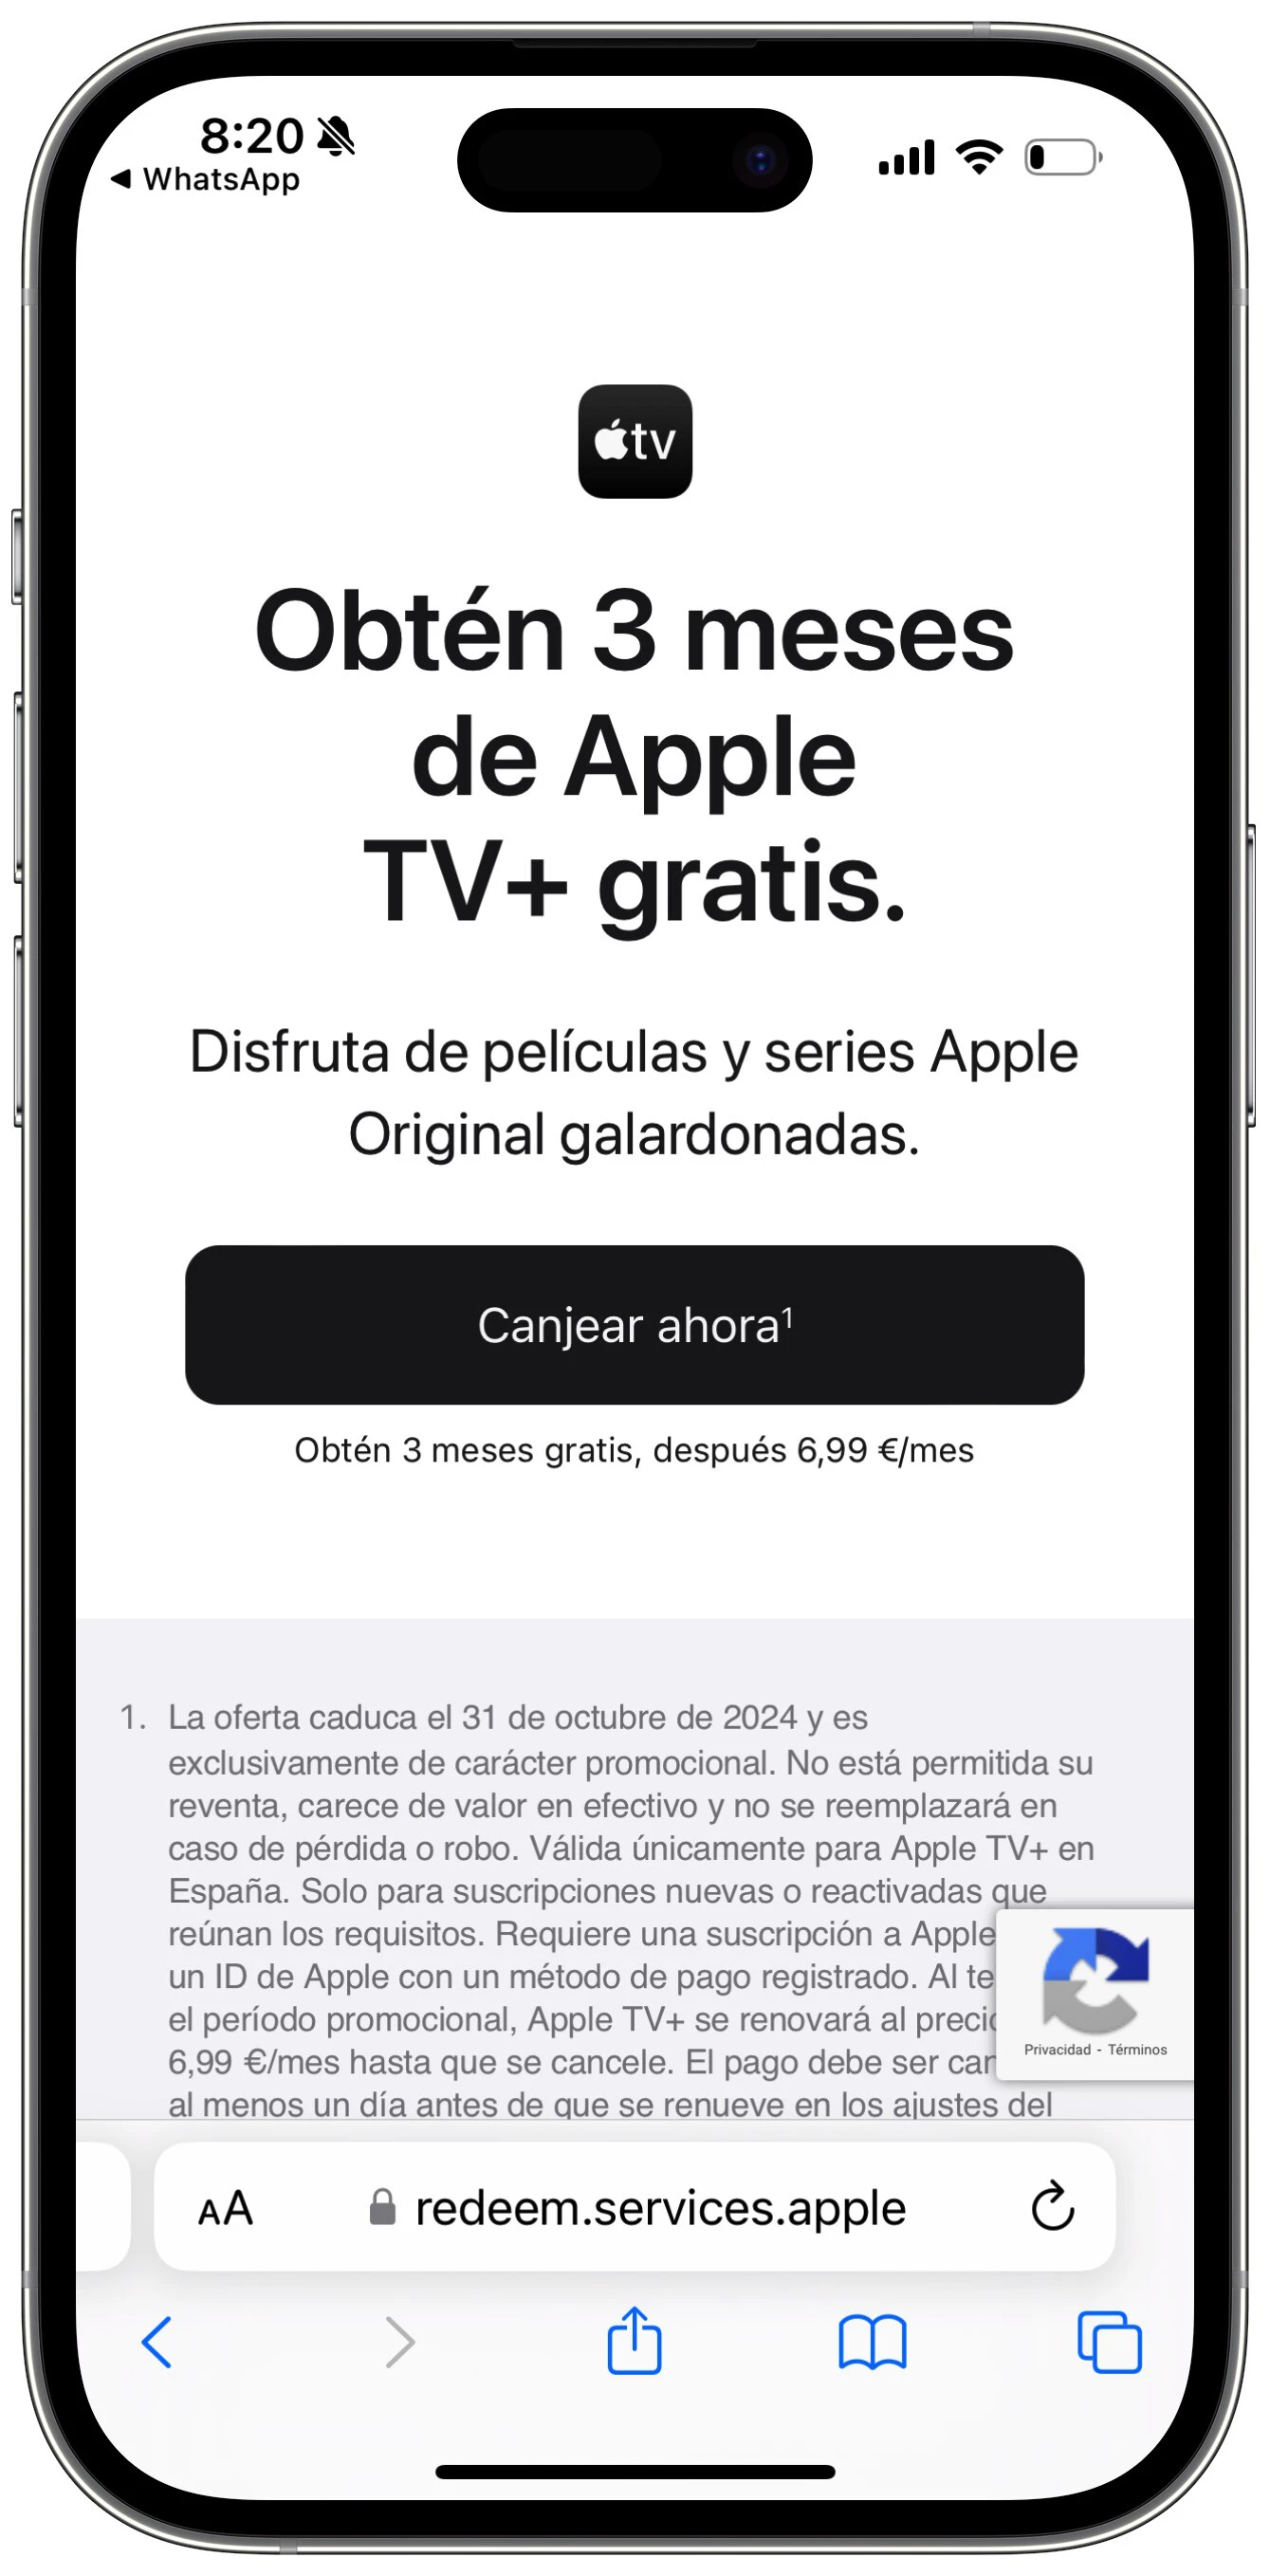 Disfruta Tres Meses gratis de Apple TV